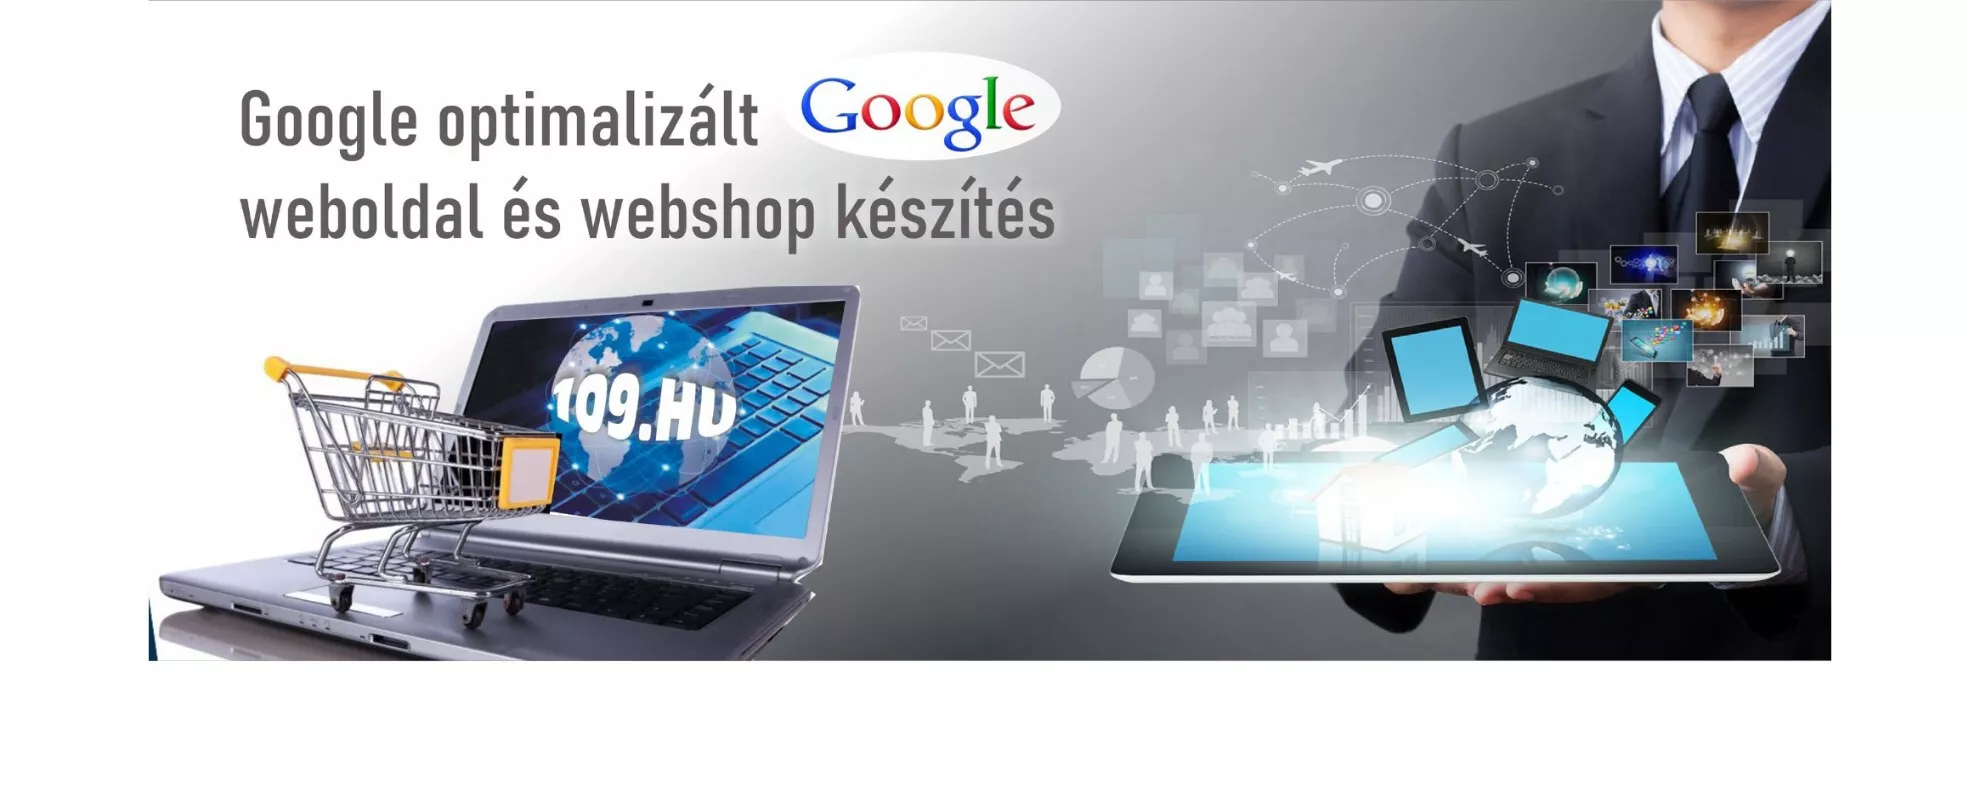 Weboldal készítés Szeged, Google optimalizálás, Csongrád megye